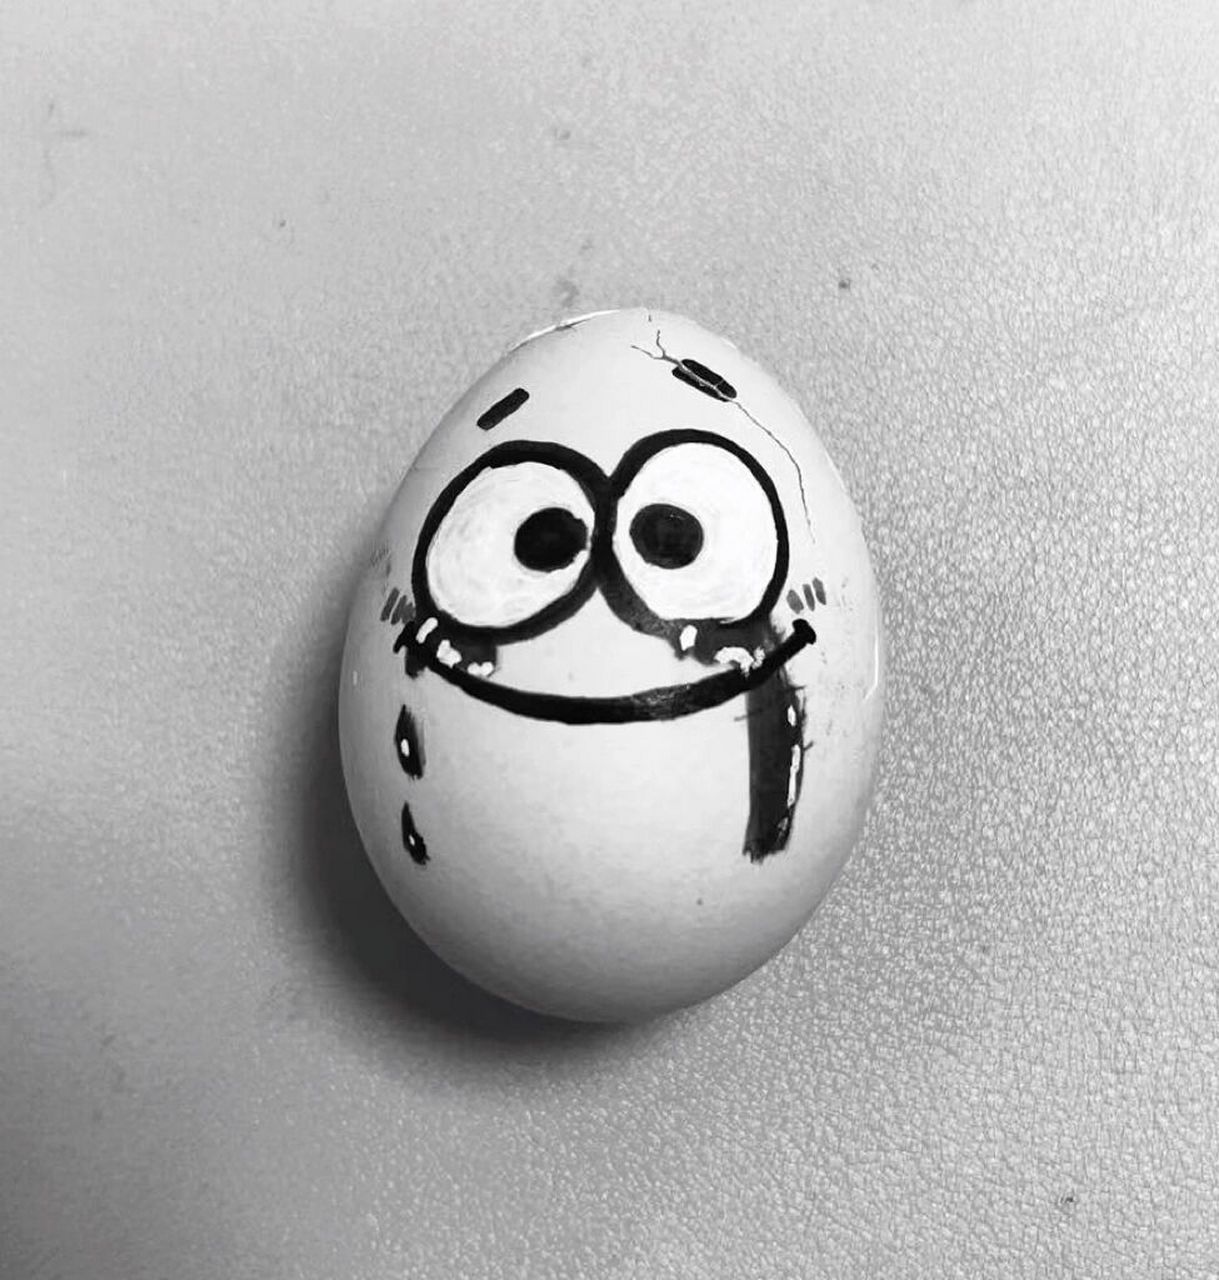 鸡蛋表情可爱绘画图片